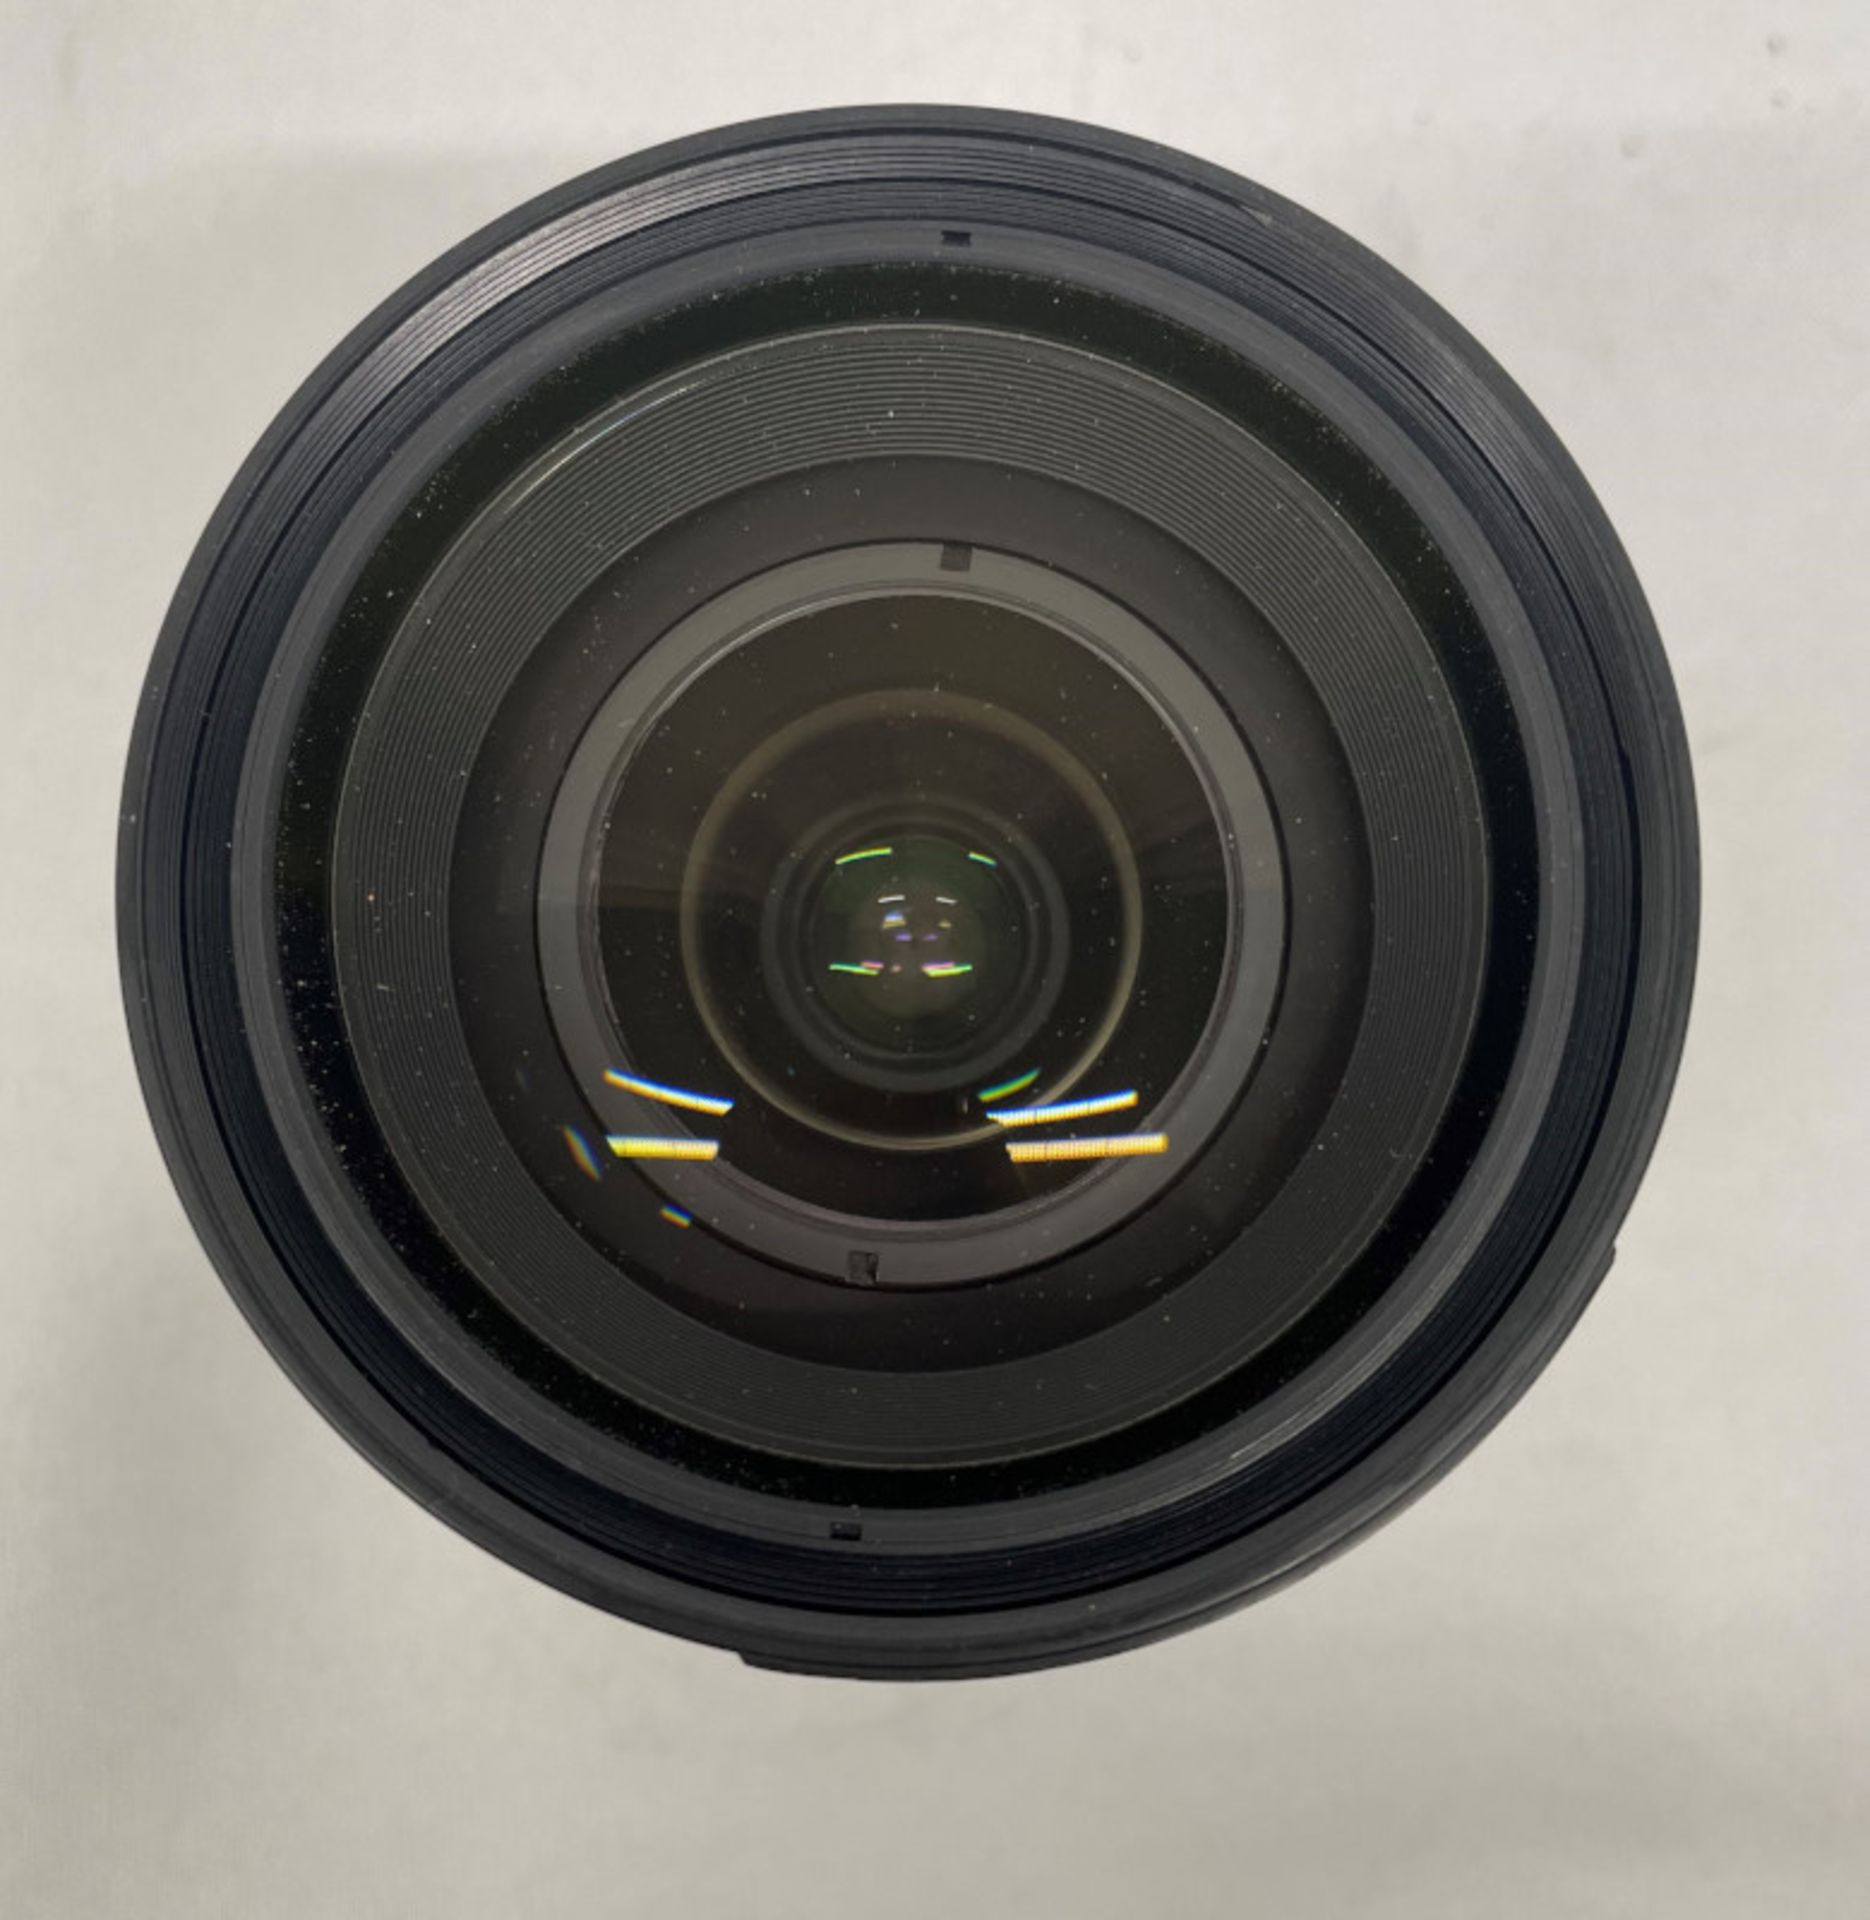 Nikon AF Nikkor 24-85mm - 1:2.8-4 D Lens - Serial No. 294654 - Image 4 of 7